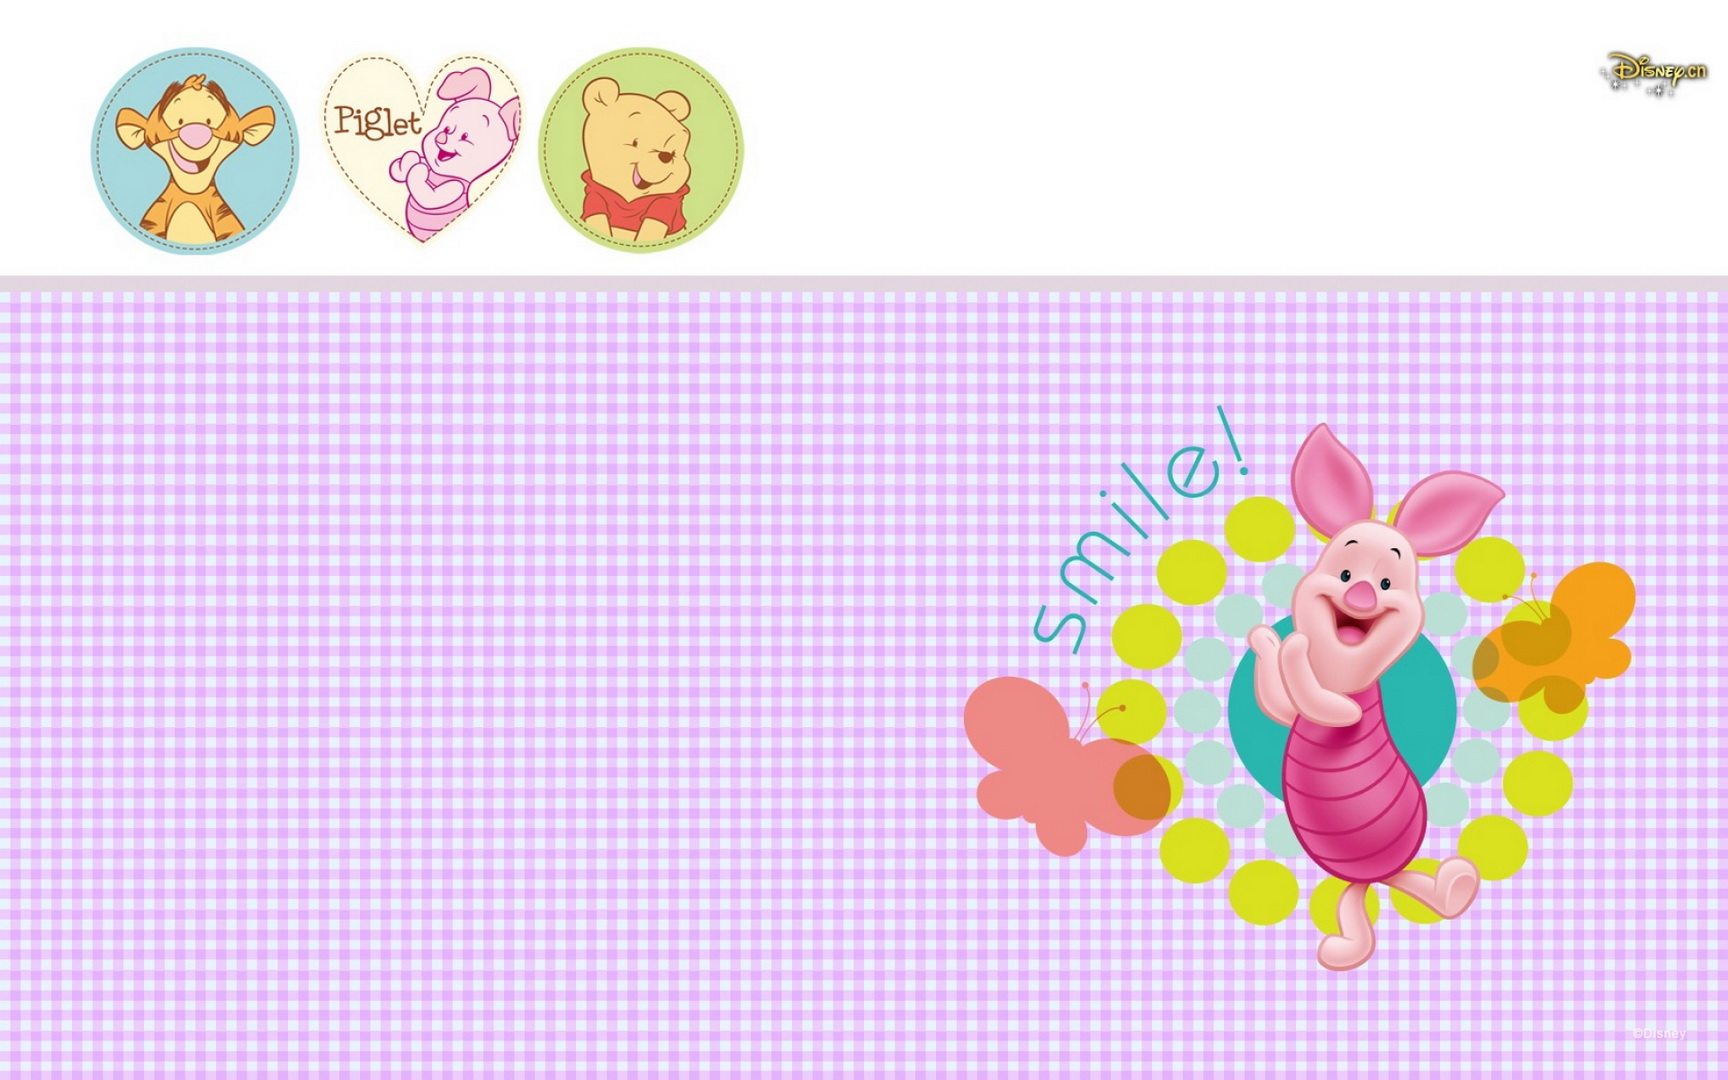 Wallpaperres.com Piglet Character Disney Cartoon Wallpaper 04